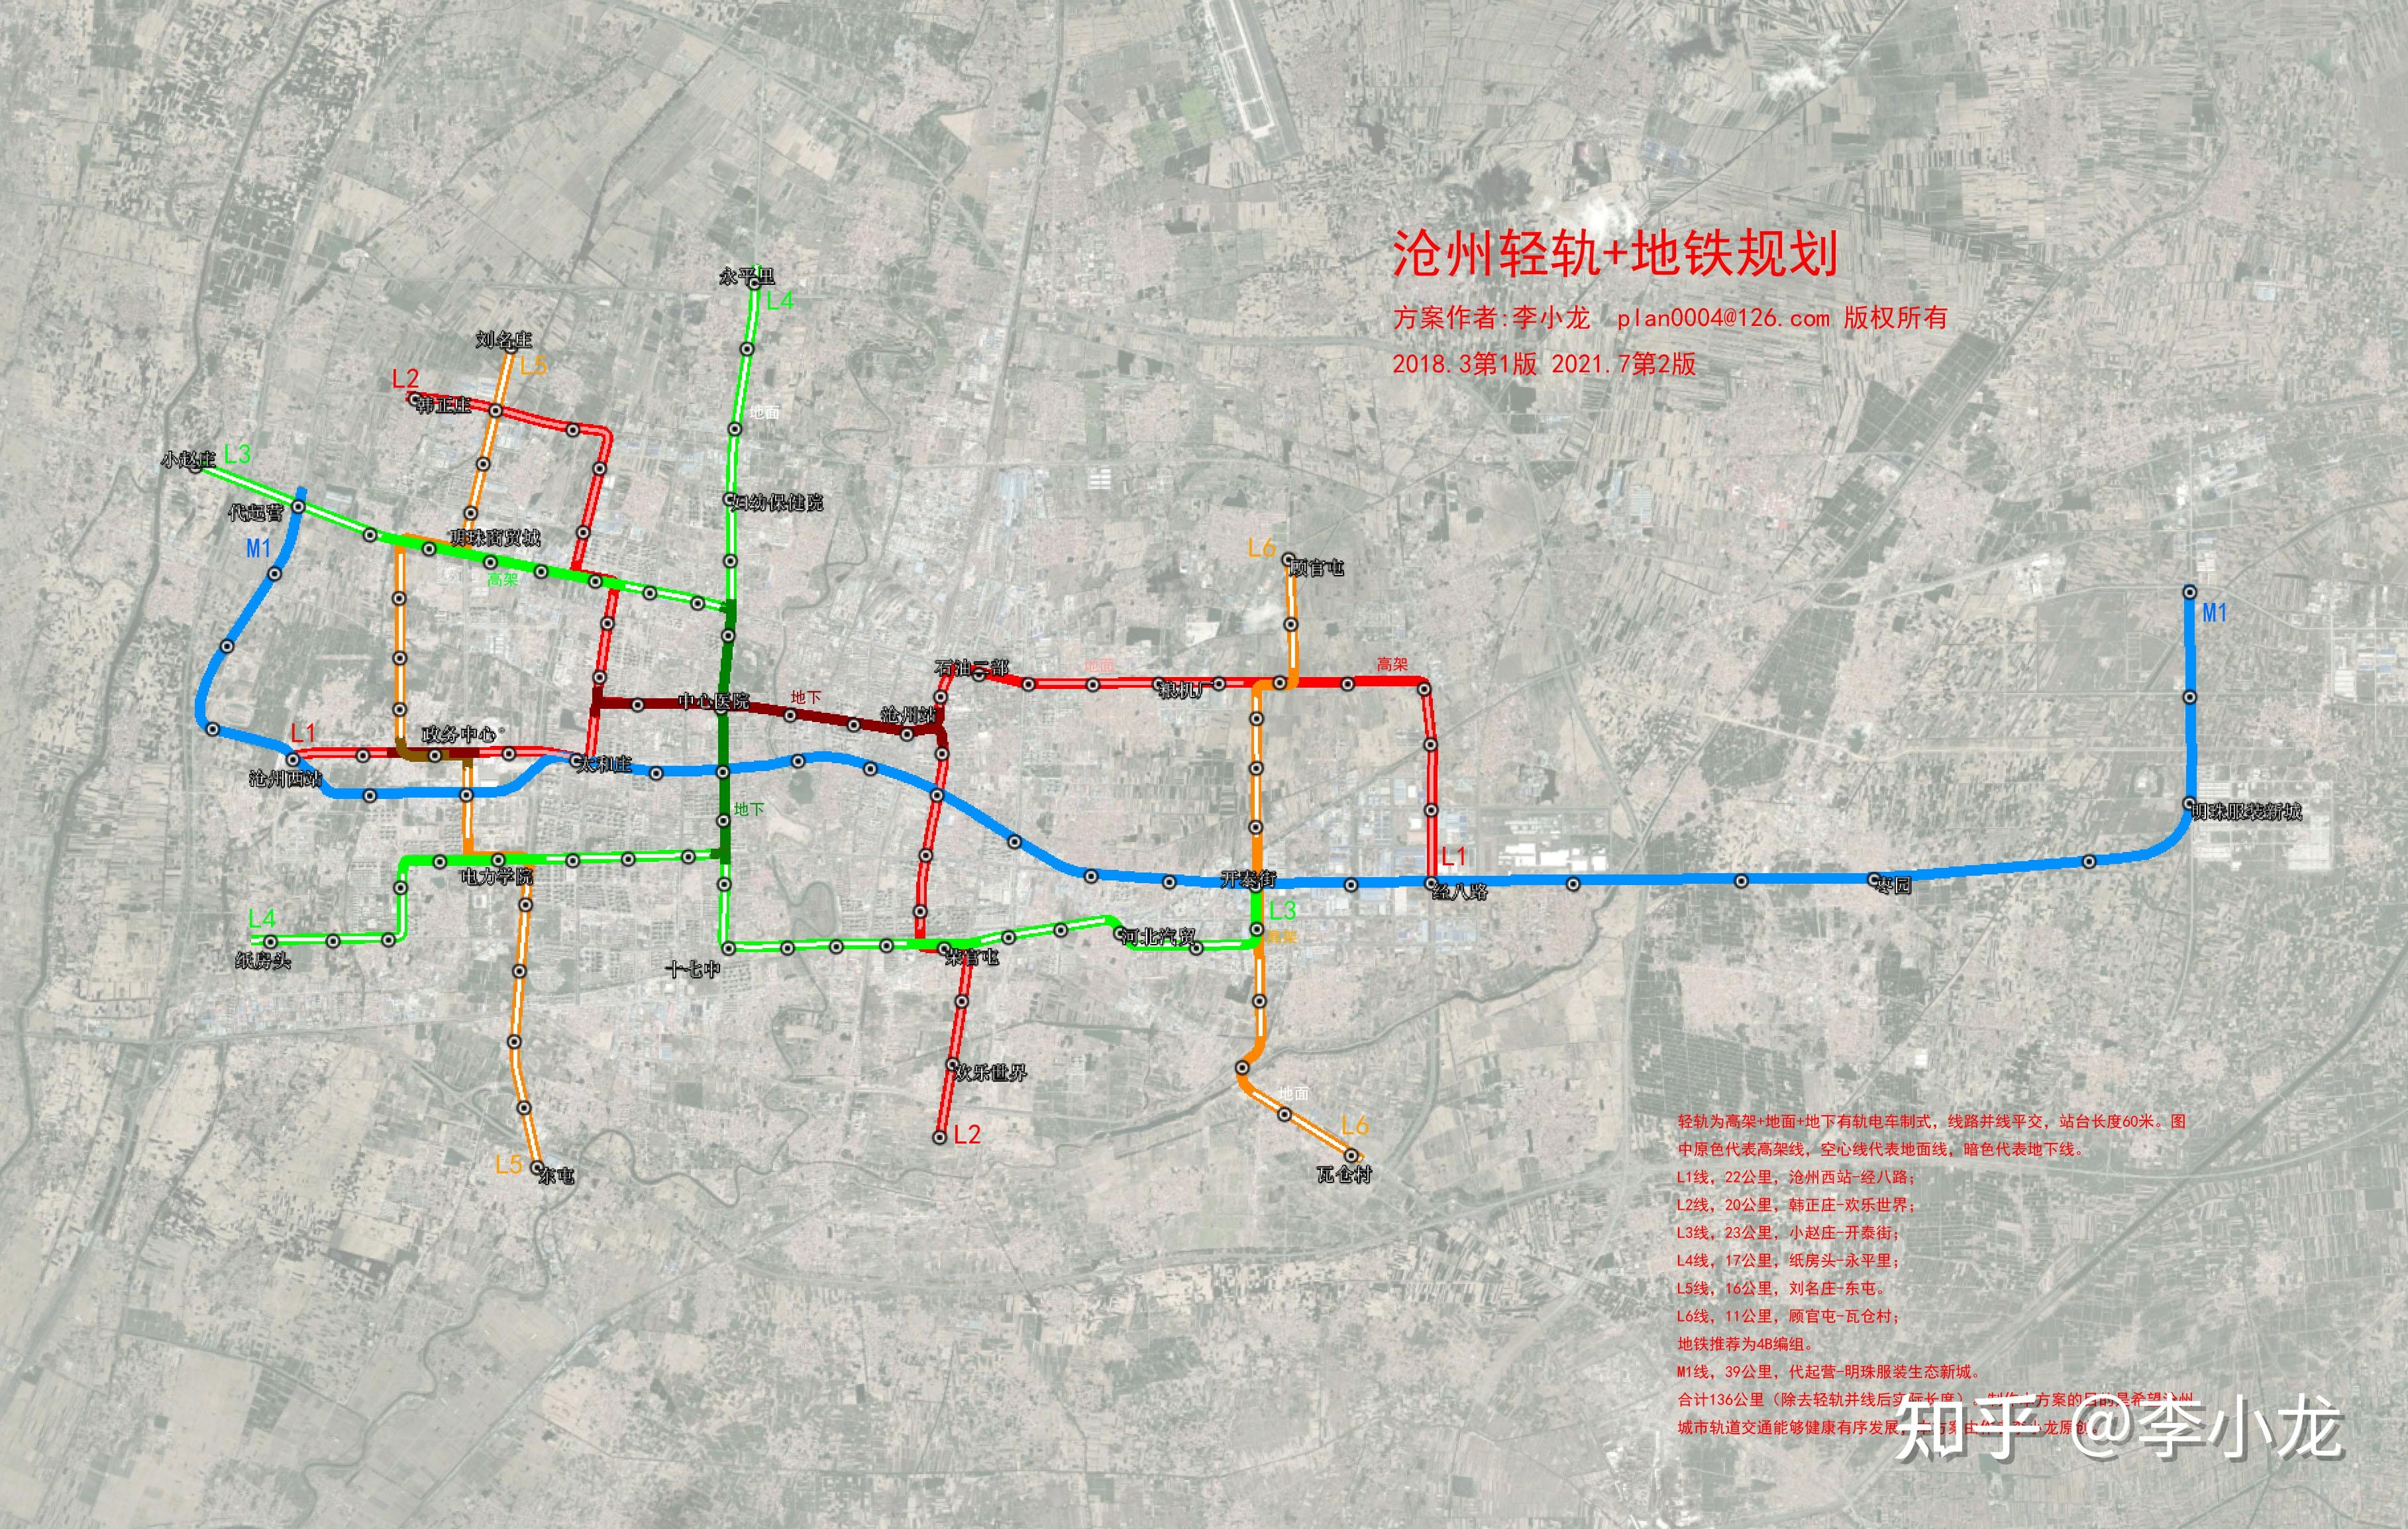 制作本方案的目的是希望沧州城市轨道交通能够健康有序发展,本方案由